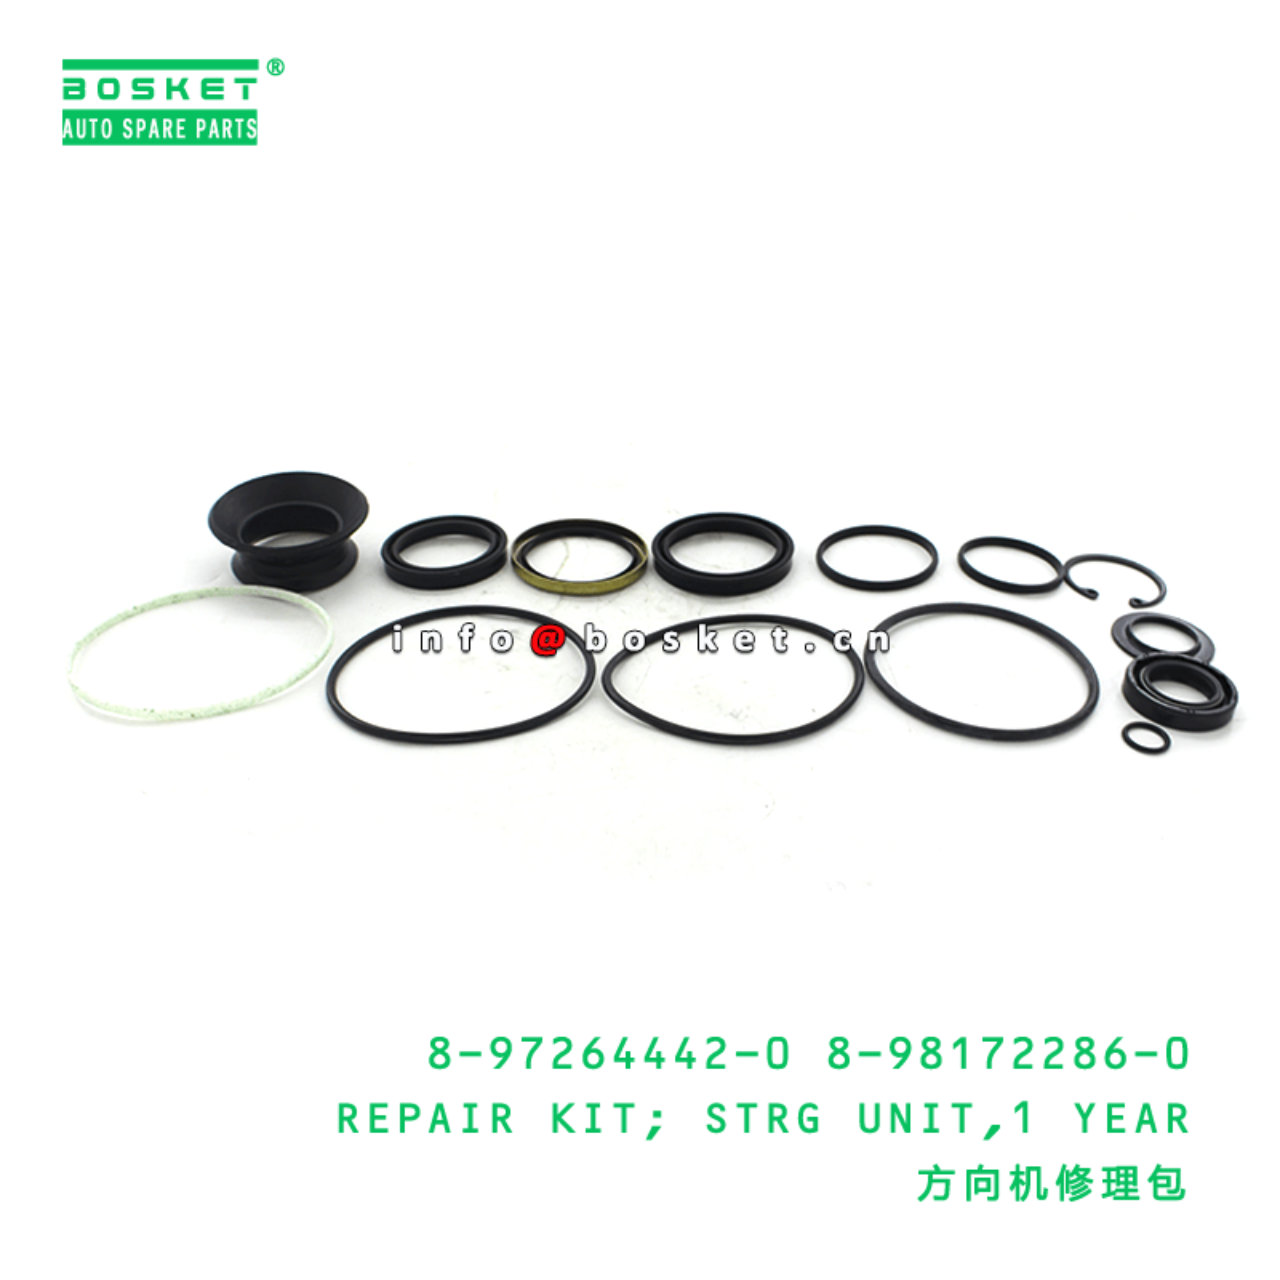  8-97264442-0 8-98172286-0 Steering Unit Repair Kit 8972644420 8981722860 Suitable for ISUZU NPR